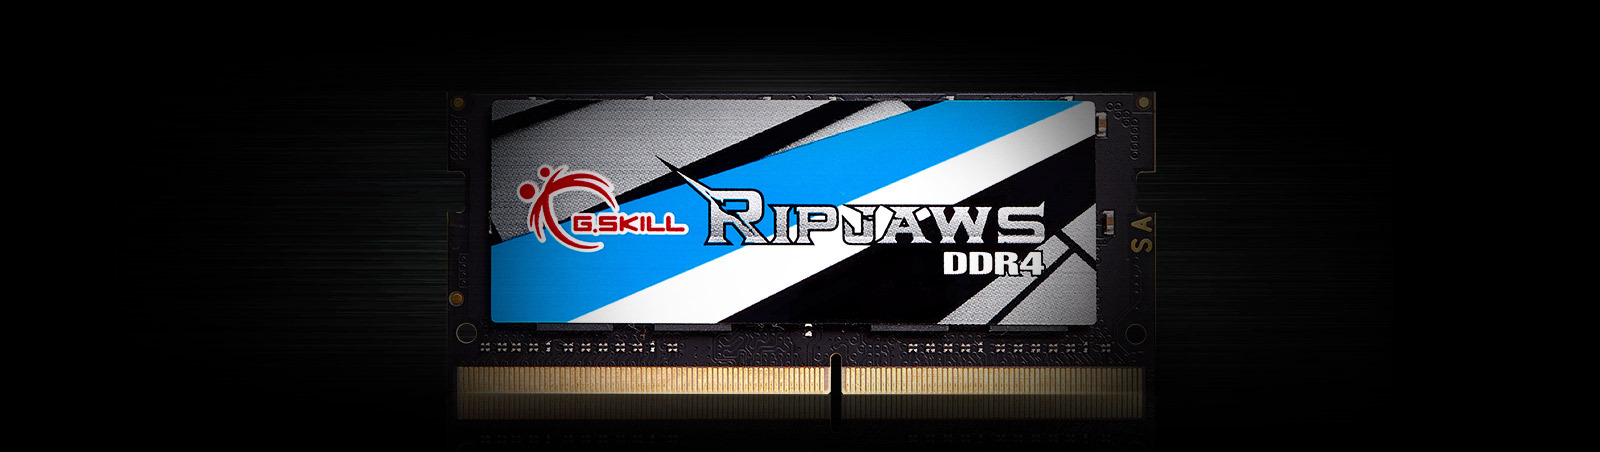 Ram Laptop Gskill (F4-3200C22D-16GRS) 16GB (1x16GB) DDR4 3200MHz